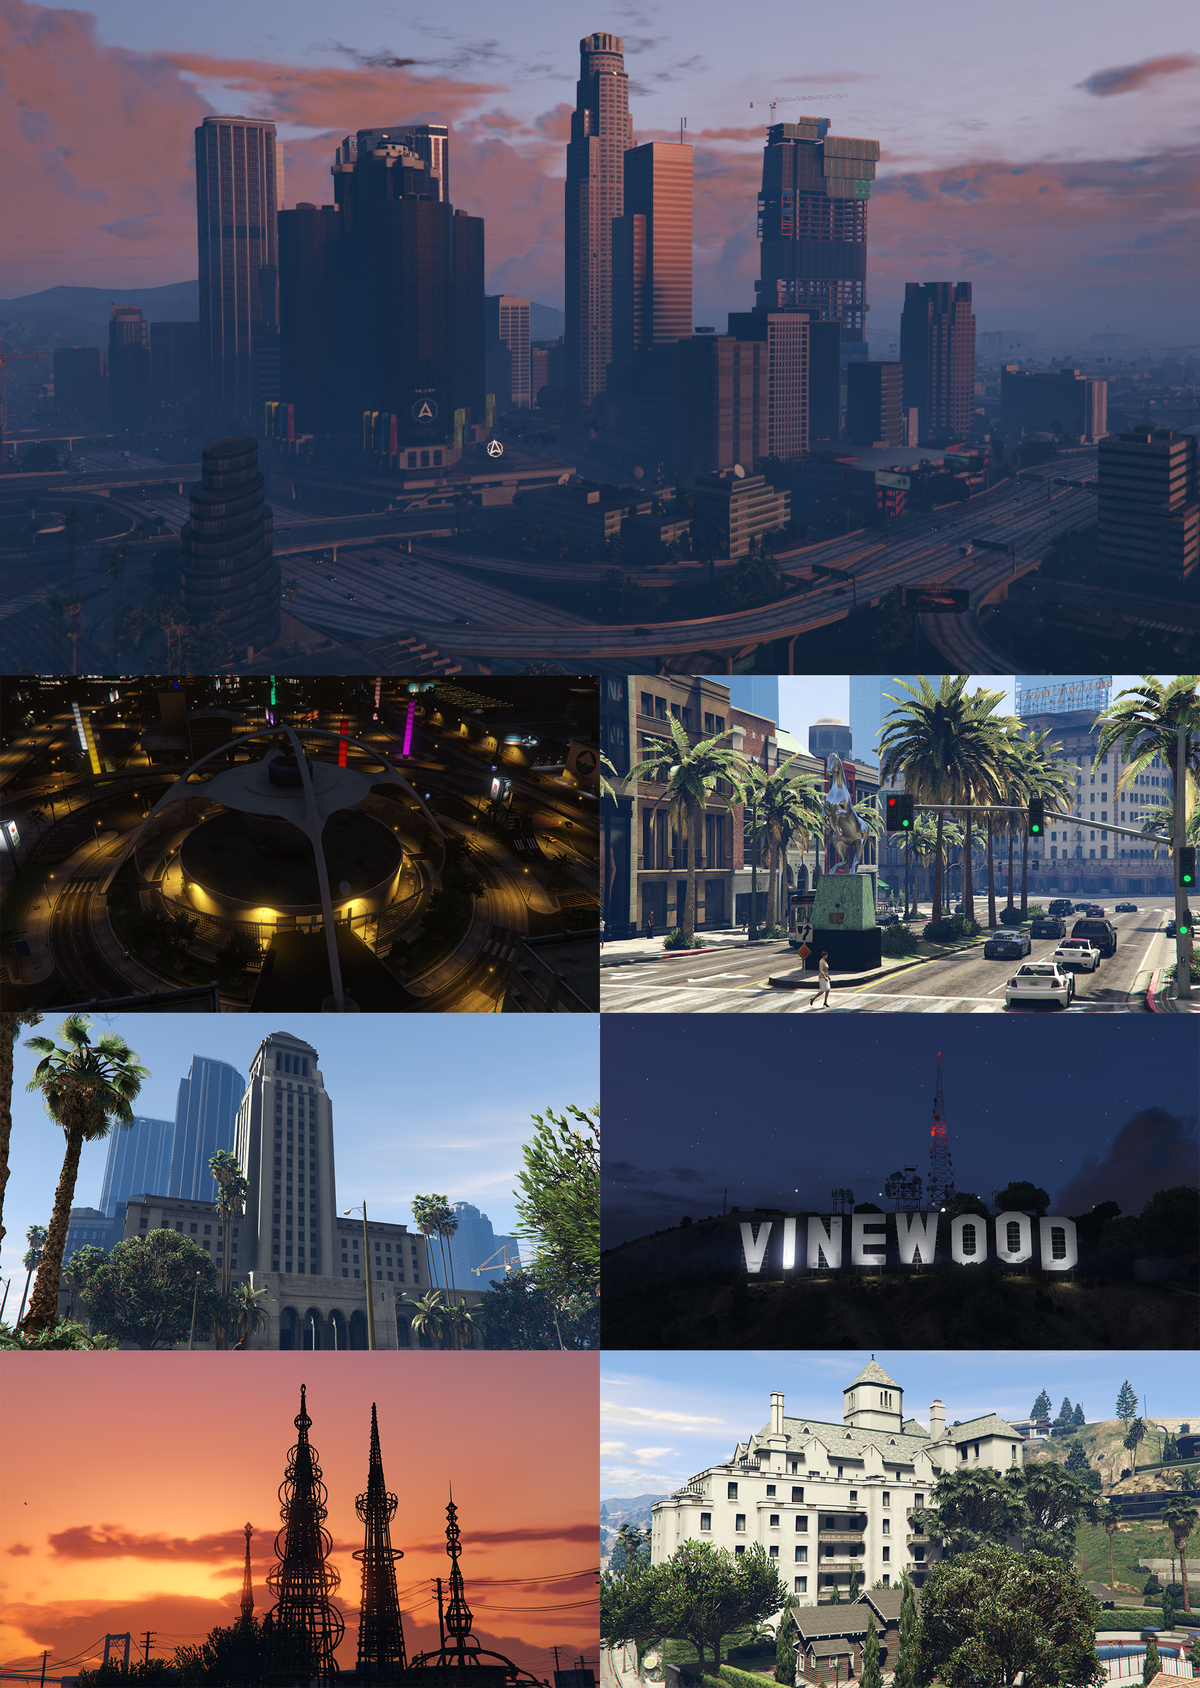 Nếu bạn là fan của game Grand Theft Auto, bạn không nên bỏ qua hình ảnh về thành phố Los Santos. Hãy khám phá sự sống động và hấp dẫn của thành phố này qua mỗi bức ảnh.